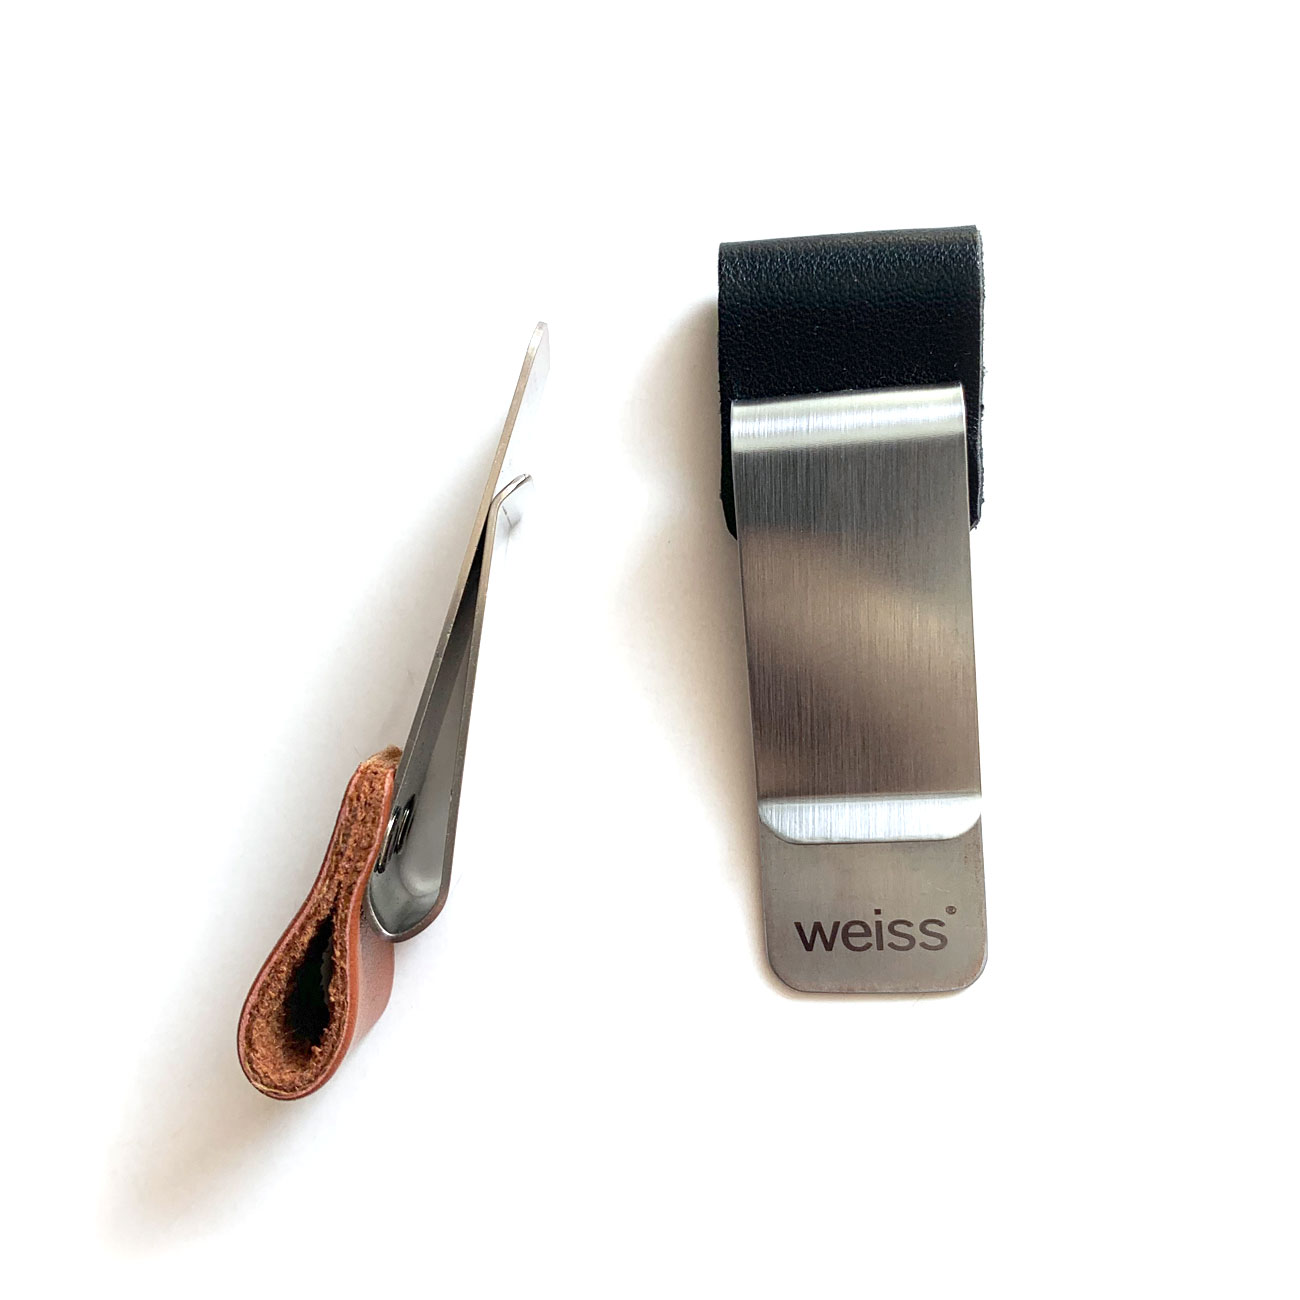 SCHWARTZ – Stiftehalter aus Leder+Metall